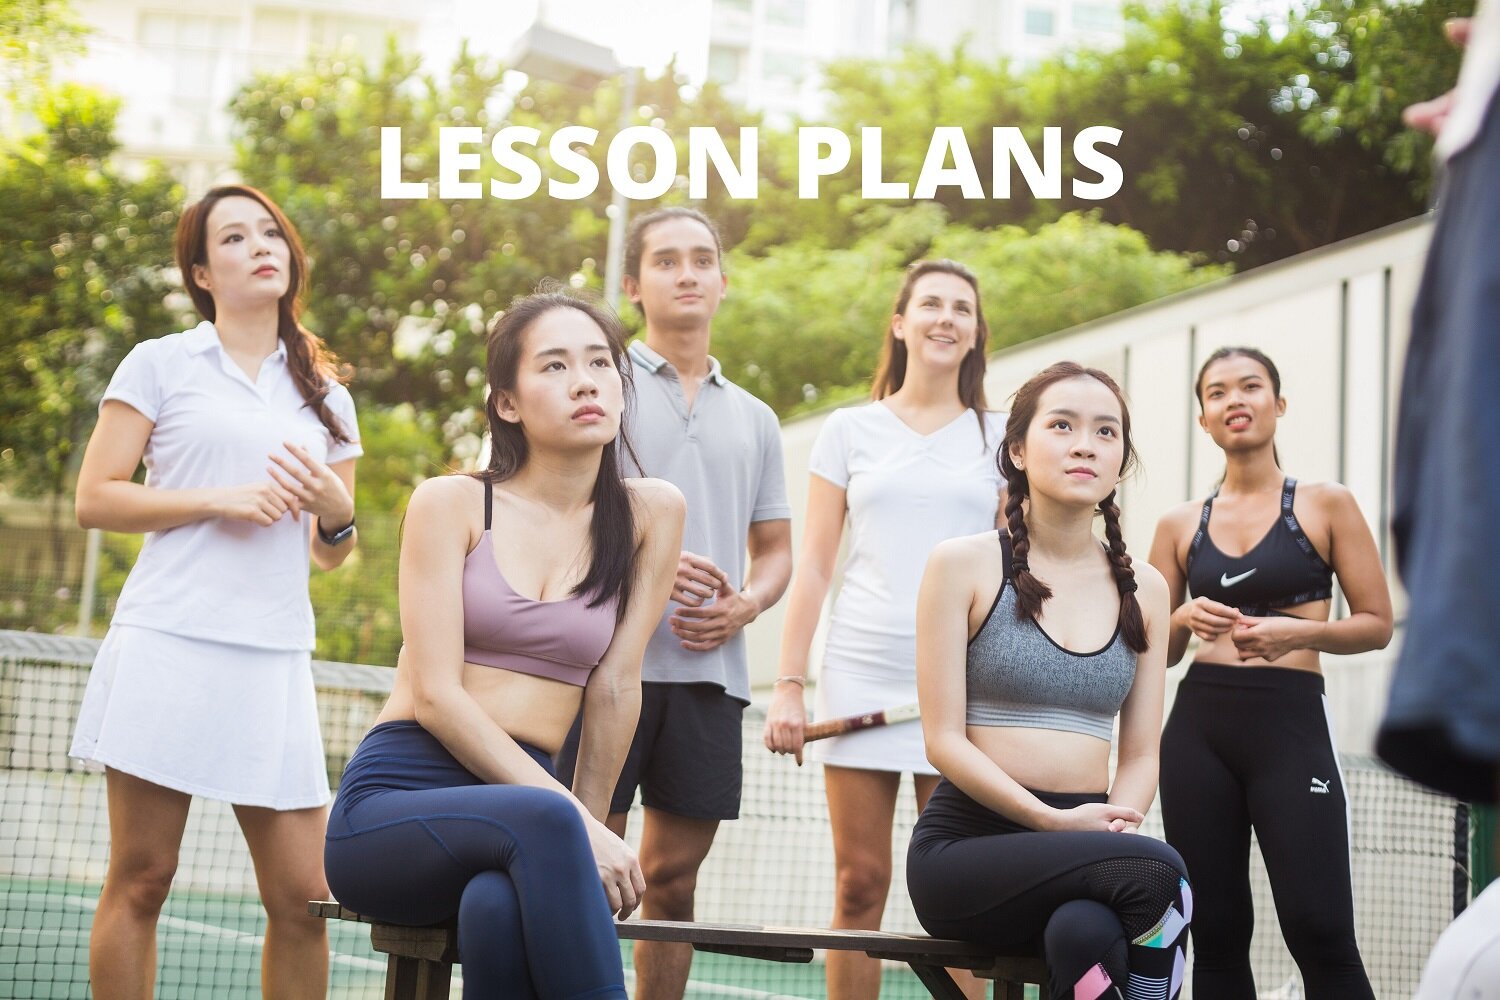 Tennis Lessons Plans (Copy)